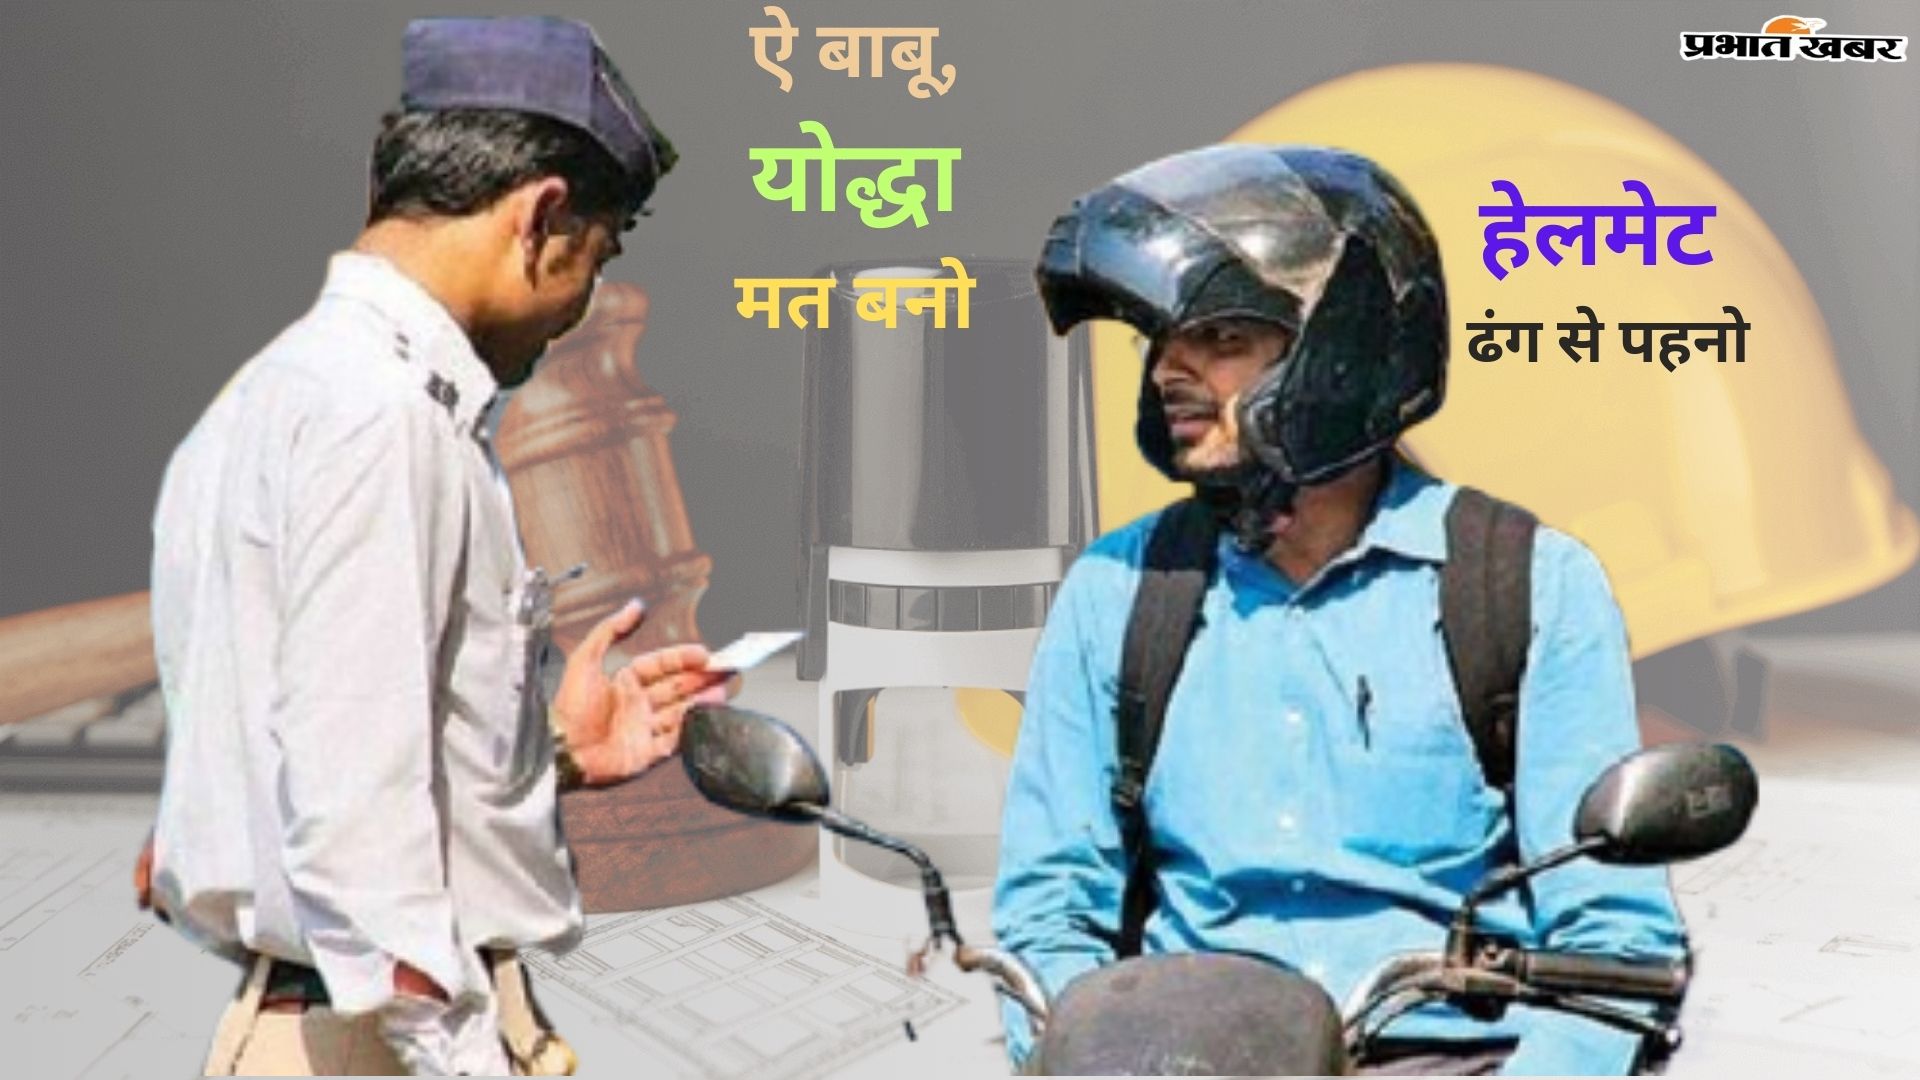 Helmet Wearing Rules: Hey Babu, don't be a warrior, wear a helmet.